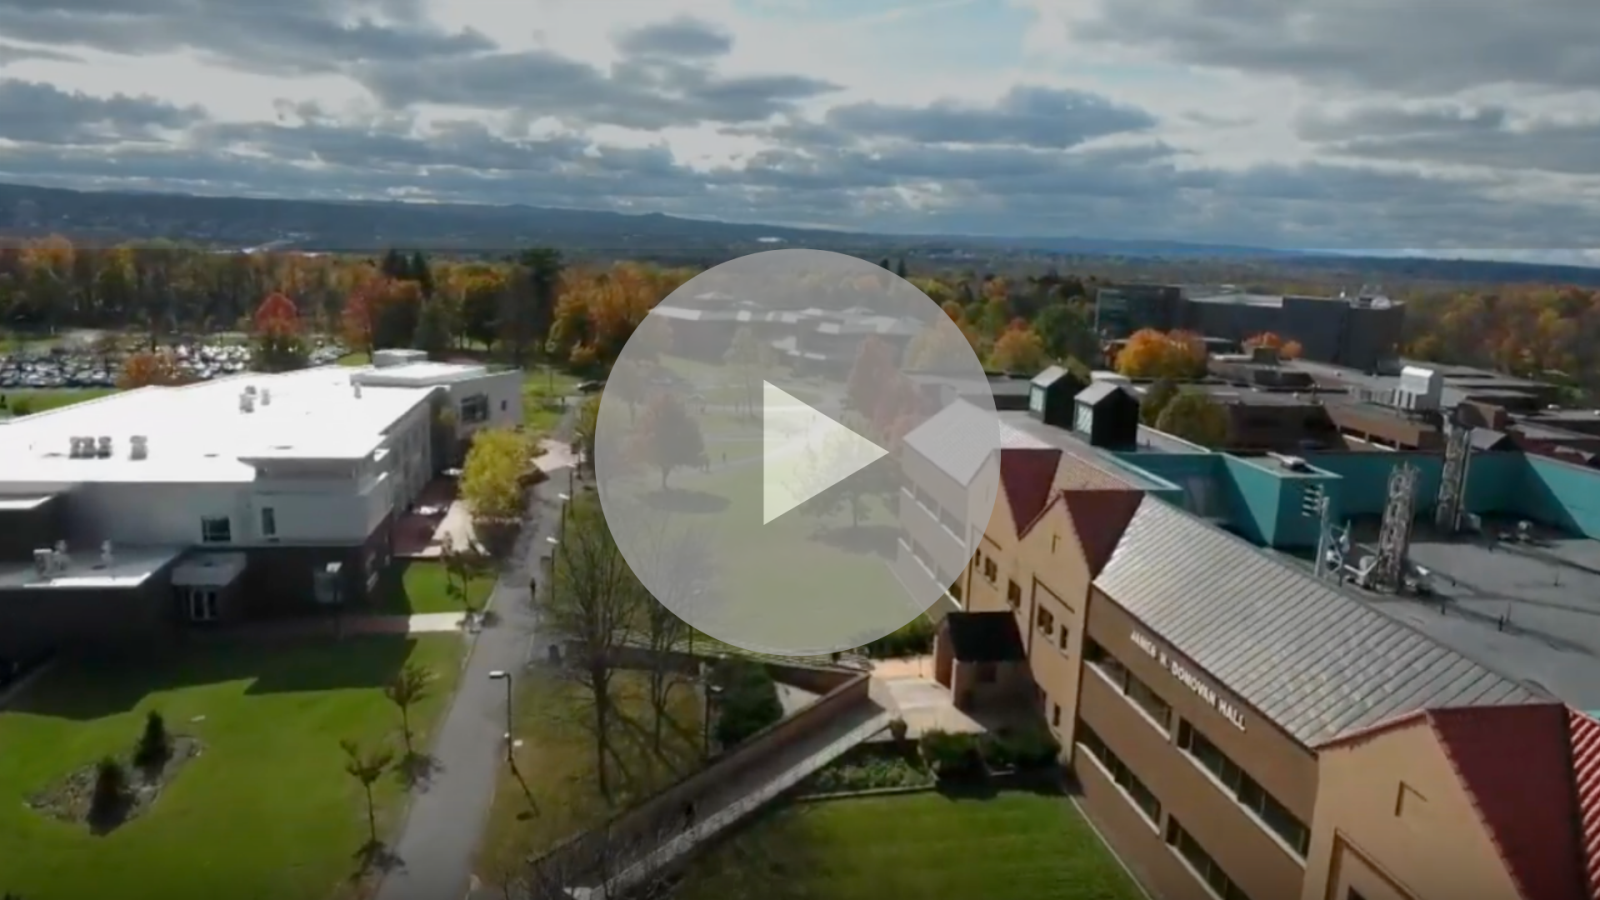 Utica campus video image link